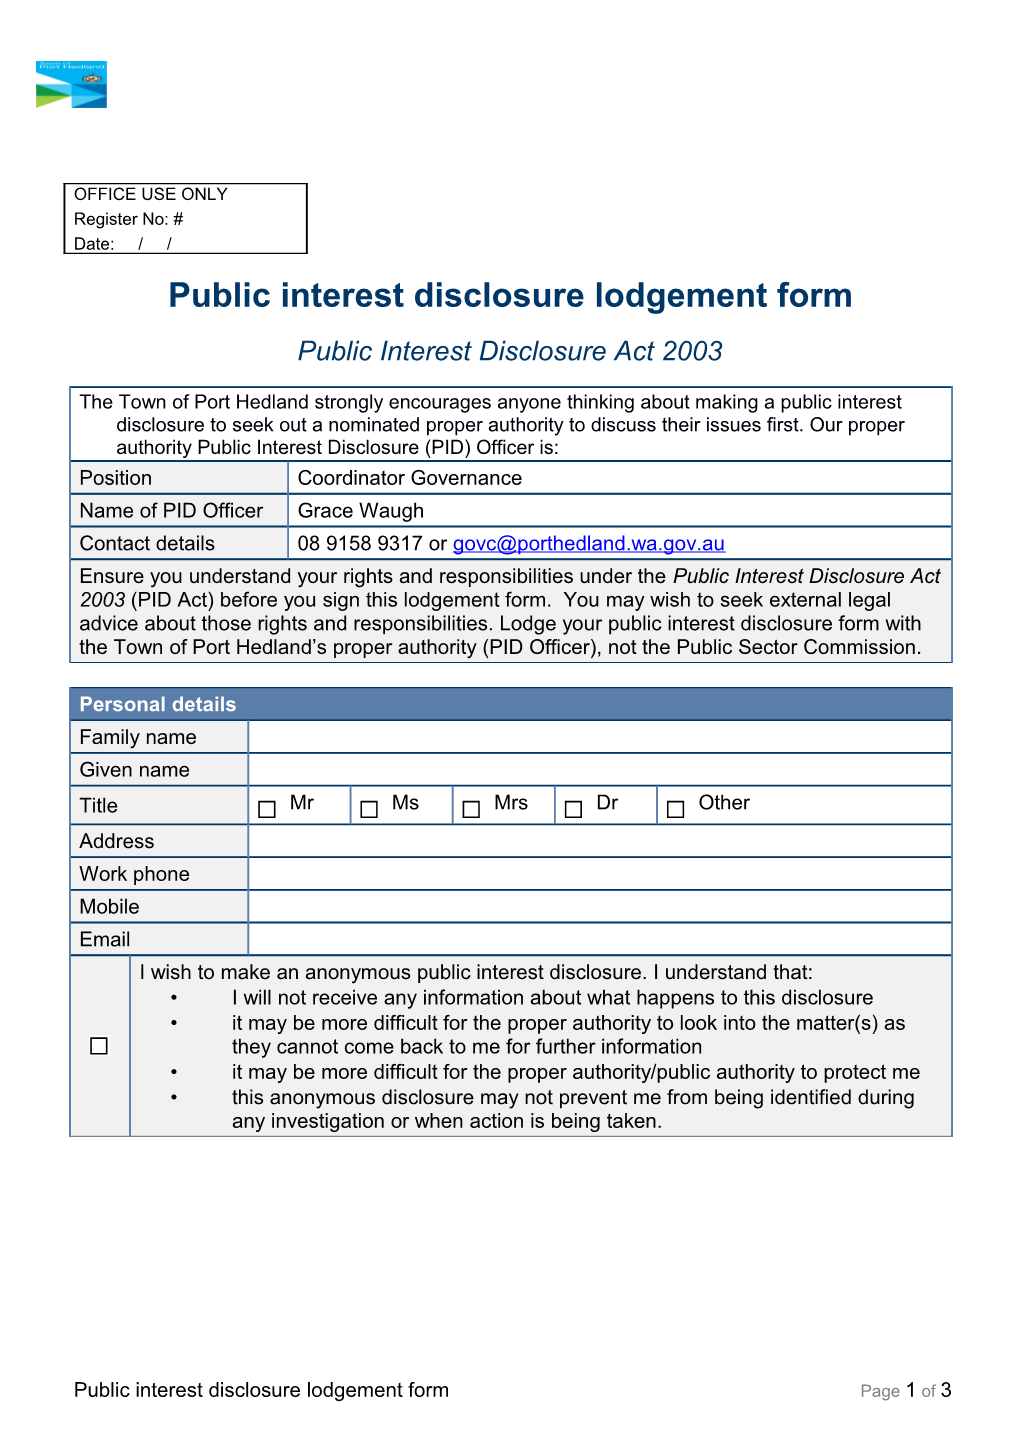 Public Interest Disclosure Lodgement Form